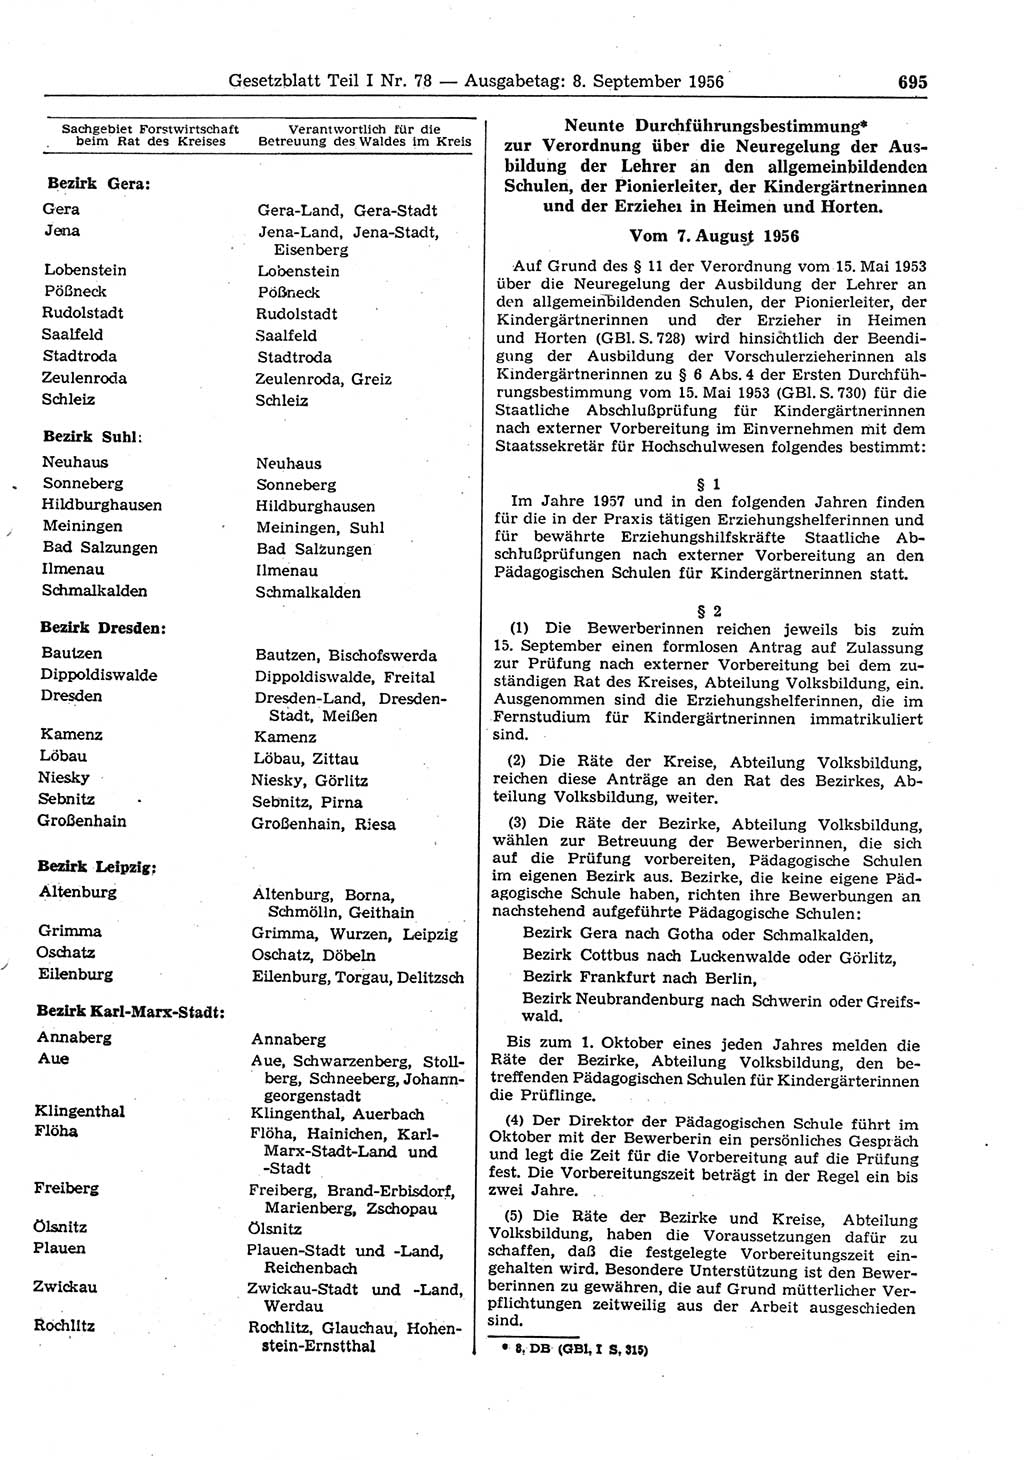 Gesetzblatt (GBl.) der Deutschen Demokratischen Republik (DDR) Teil Ⅰ 1956, Seite 695 (GBl. DDR Ⅰ 1956, S. 695)